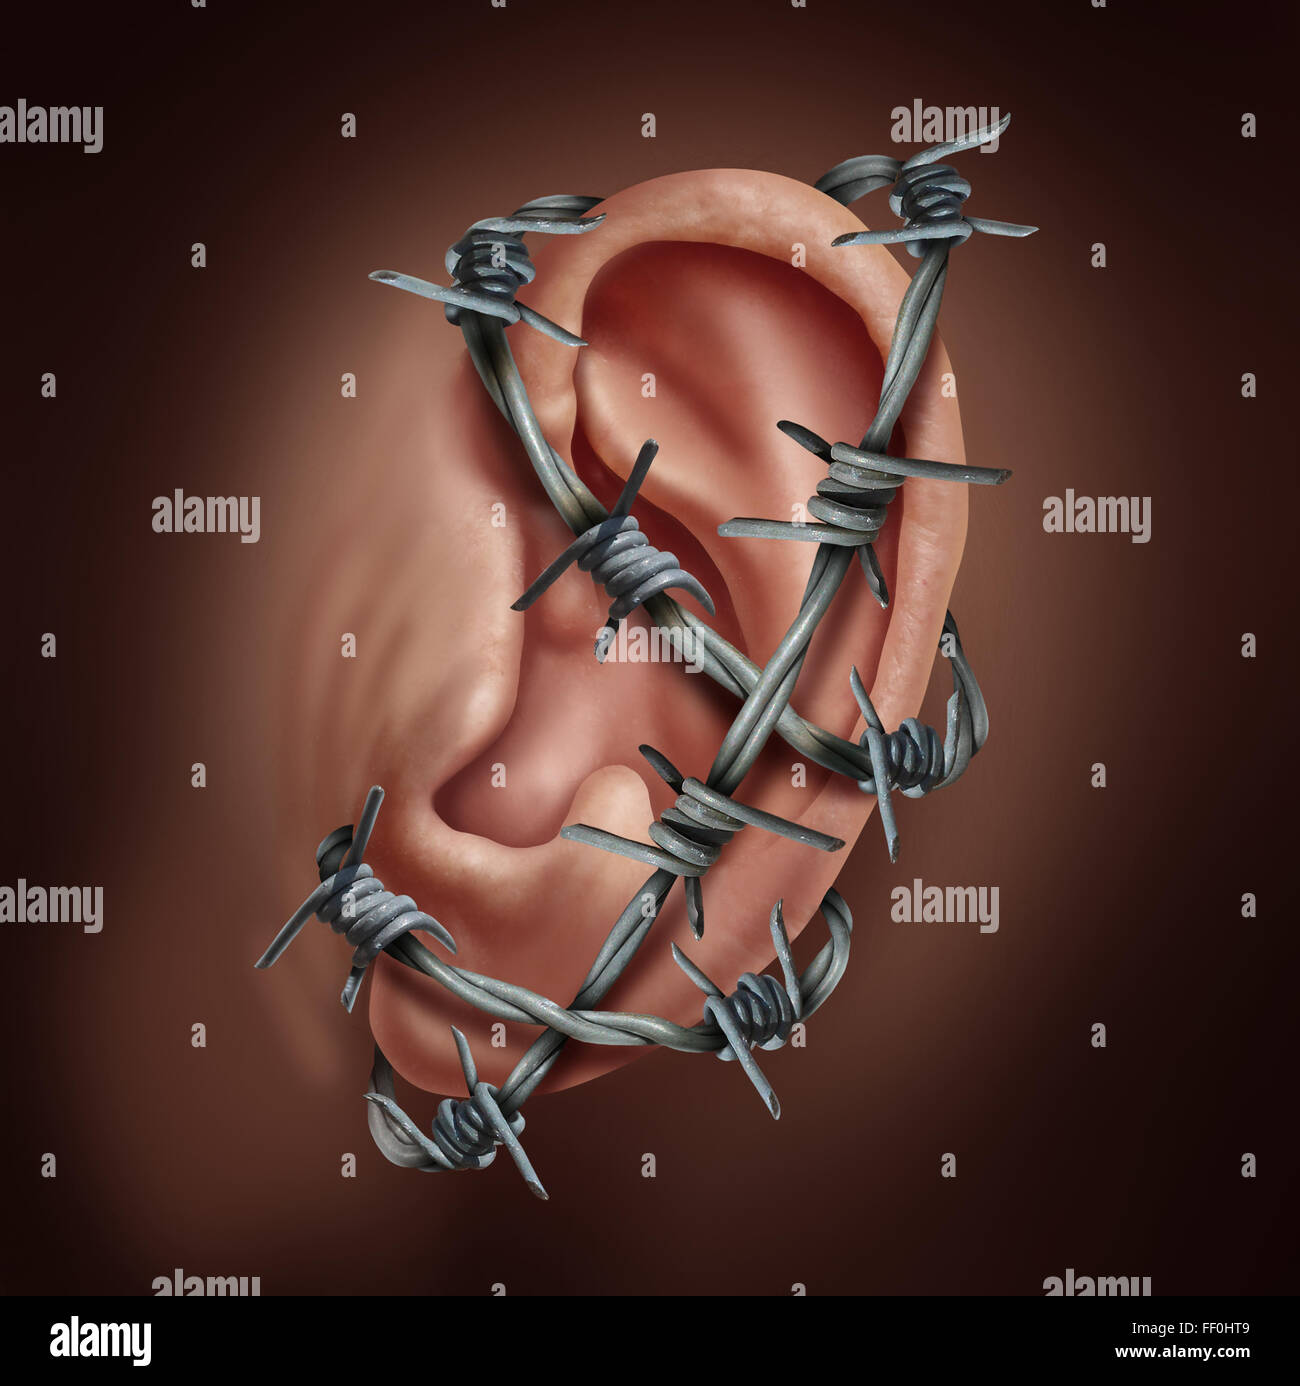 Dolor de oído humano y símbolo de la infección de oído como alambre de espino envuelto alrededor de la audiencia parte del cuerpo causando un fuerte ardor enfermedad Foto de stock